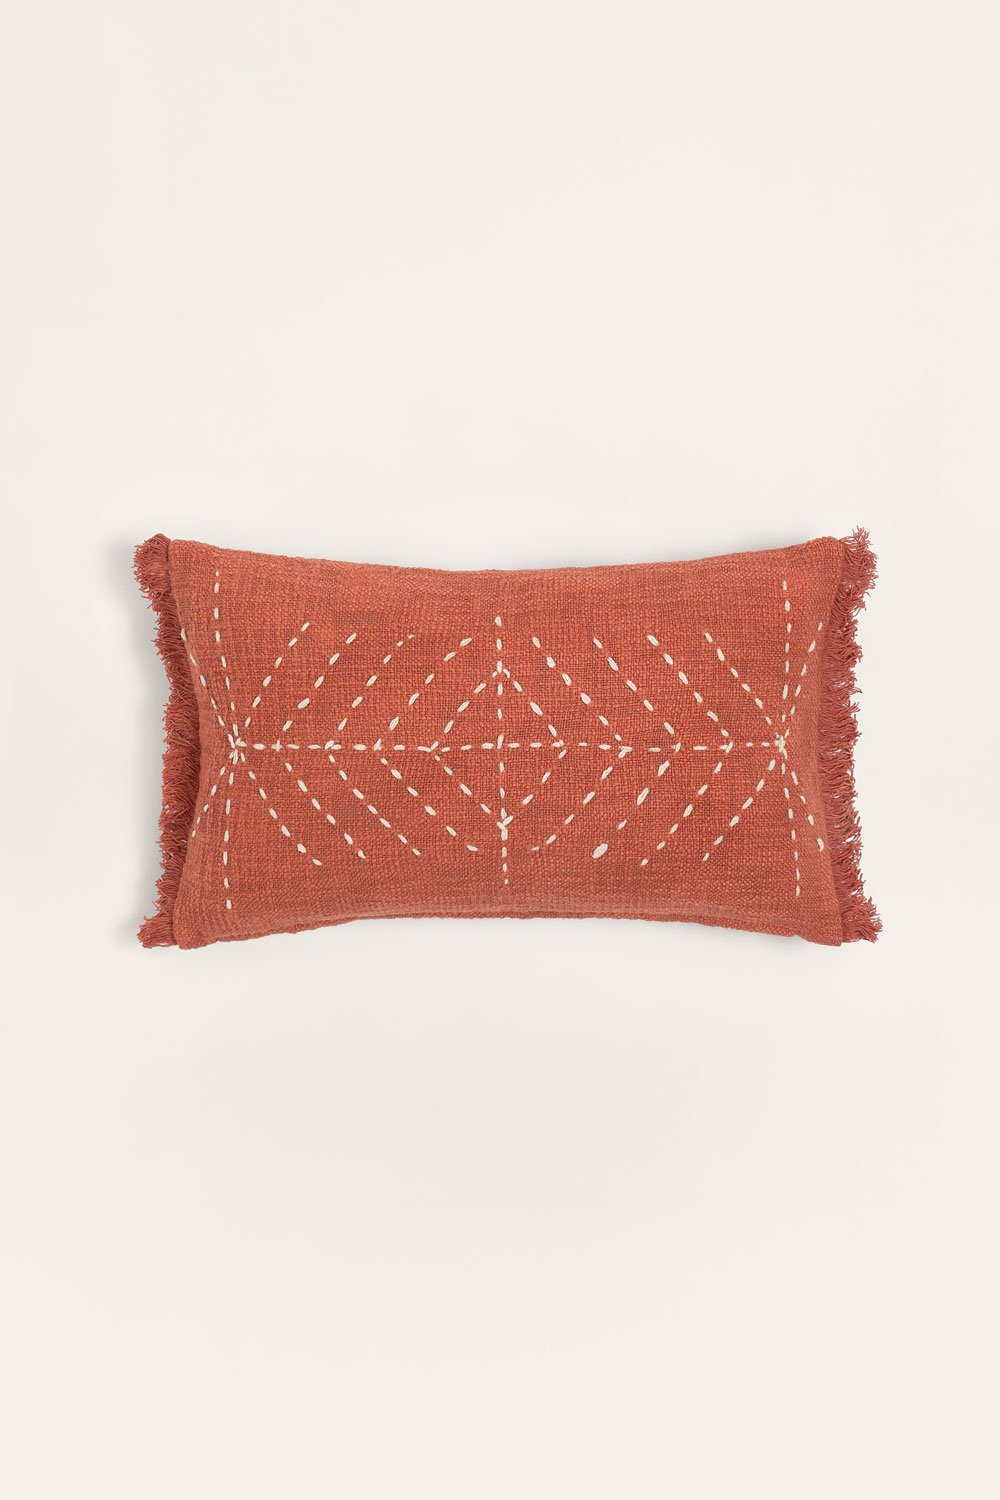 Coussin rectangulaire en coton (30x50 cm) Iguatu, image de la galerie 1